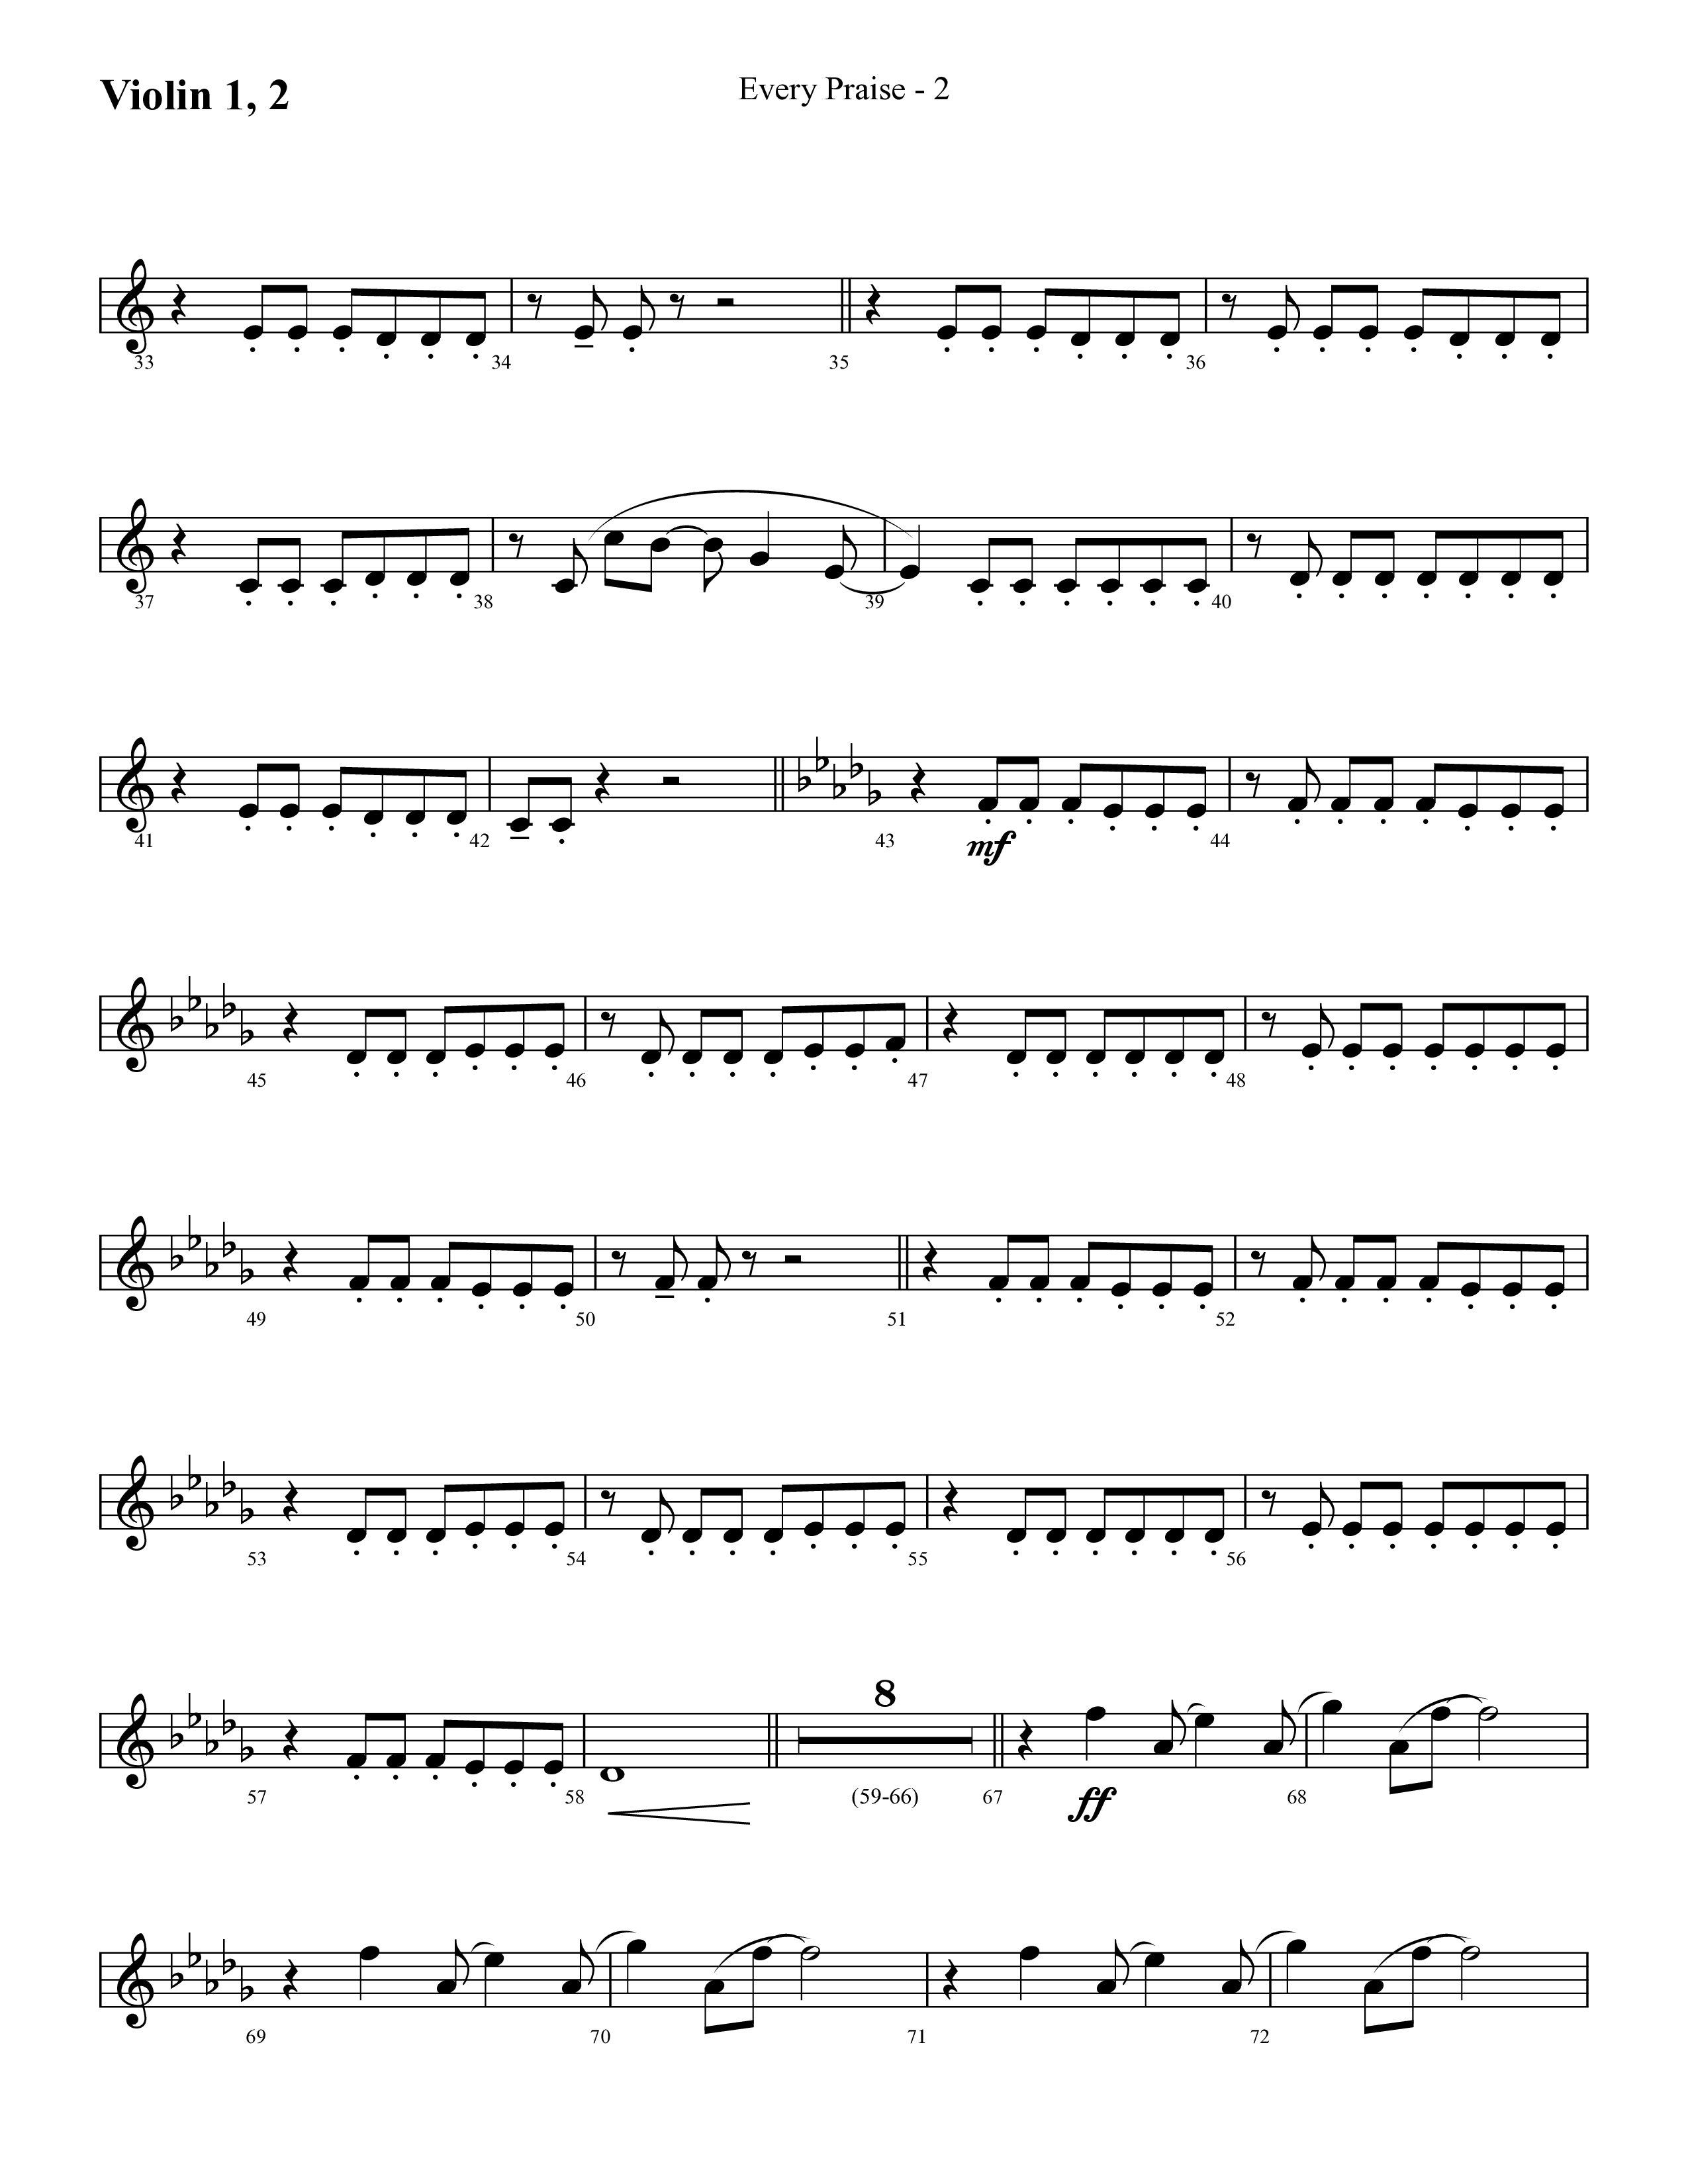 Every Praise (Choral Anthem SATB) Violin 1/2 (Lifeway Choral / Arr. Cliff Duren)